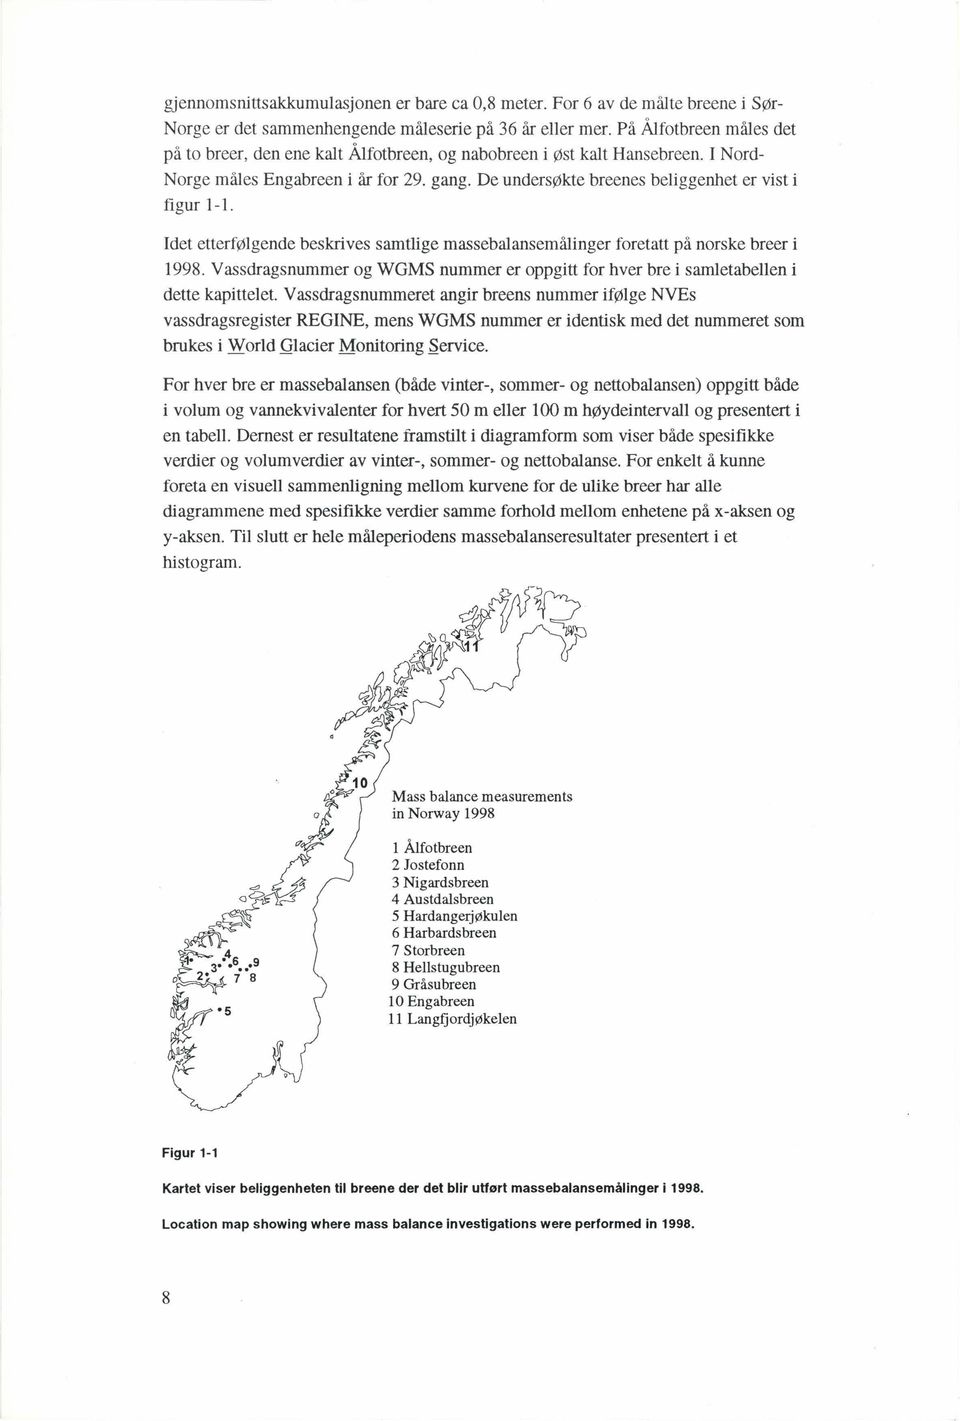 Idet etterfølgende beskrives samtlige massebalansemålinger foretatt på norske breer i 1998. Vassdragsnummer og WGMS nummer er oppgitt for hver bre i samletabellen i dette kapittelet.